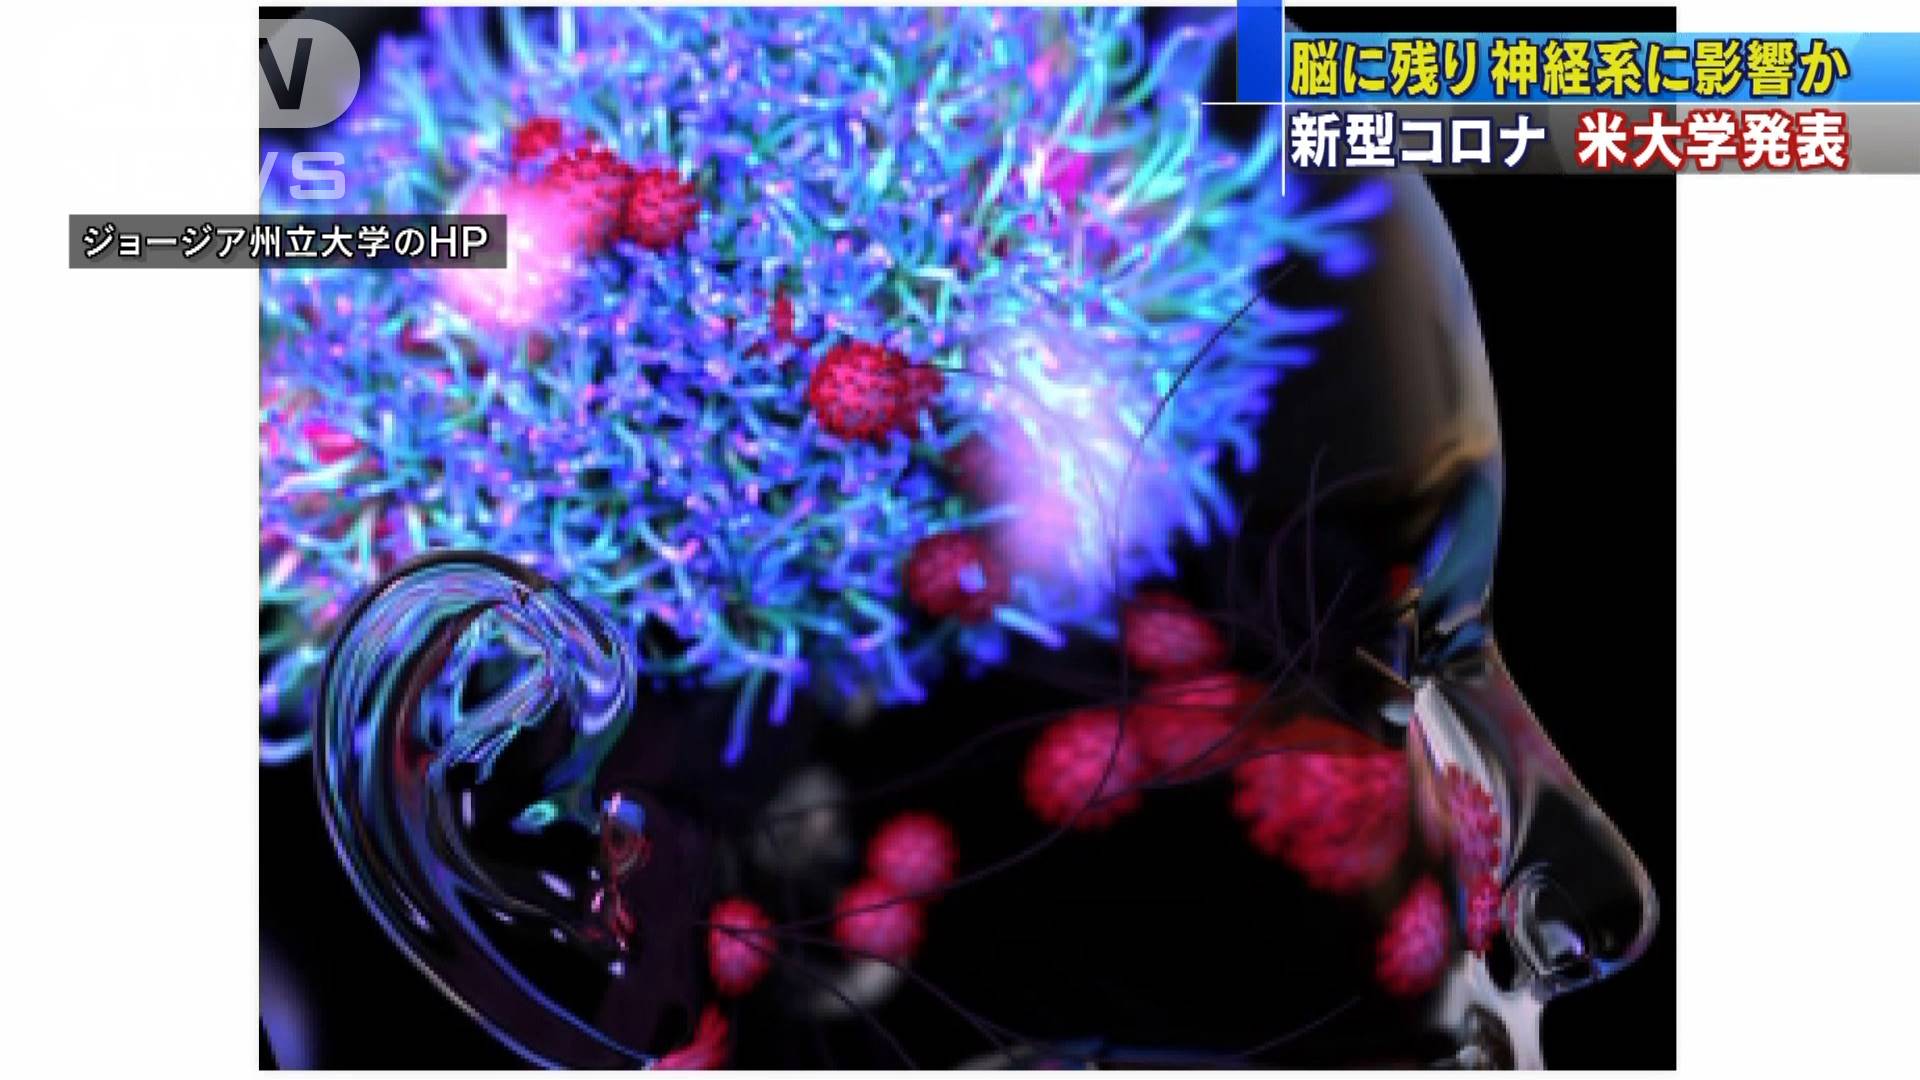 ウイルスが脳に リスク高まる マウス実験で発表 テレ朝news テレビ朝日のニュースサイト